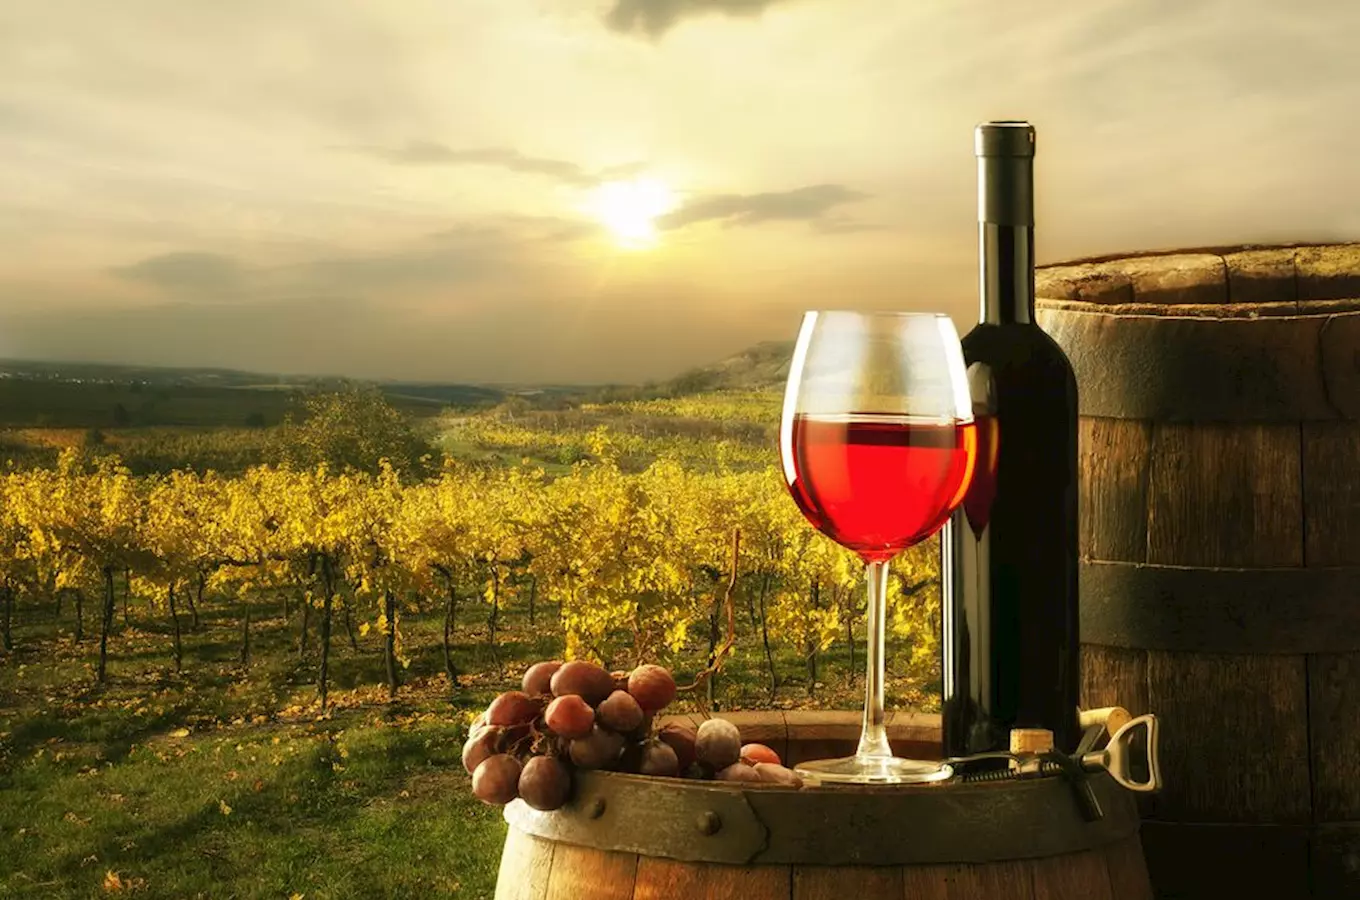 Salon vín je nejpopulárnějším TOP vinařským cílem roku 2022